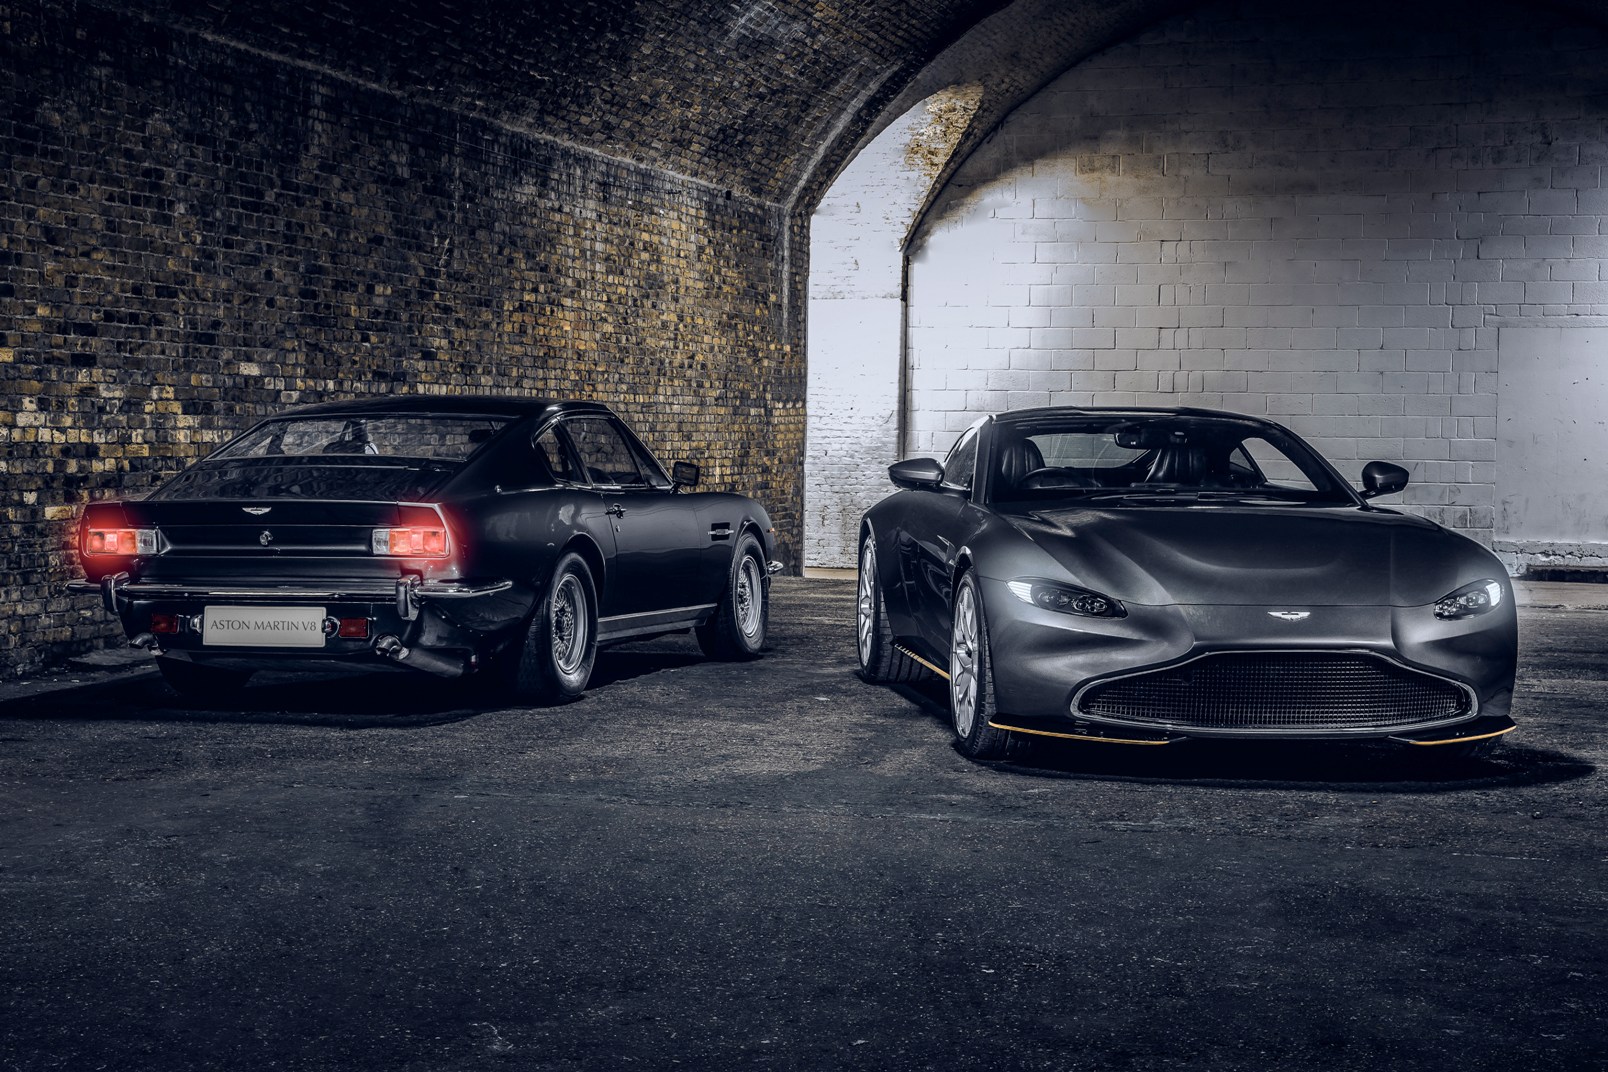 Aston Martin Vantage 007 Edition (6)